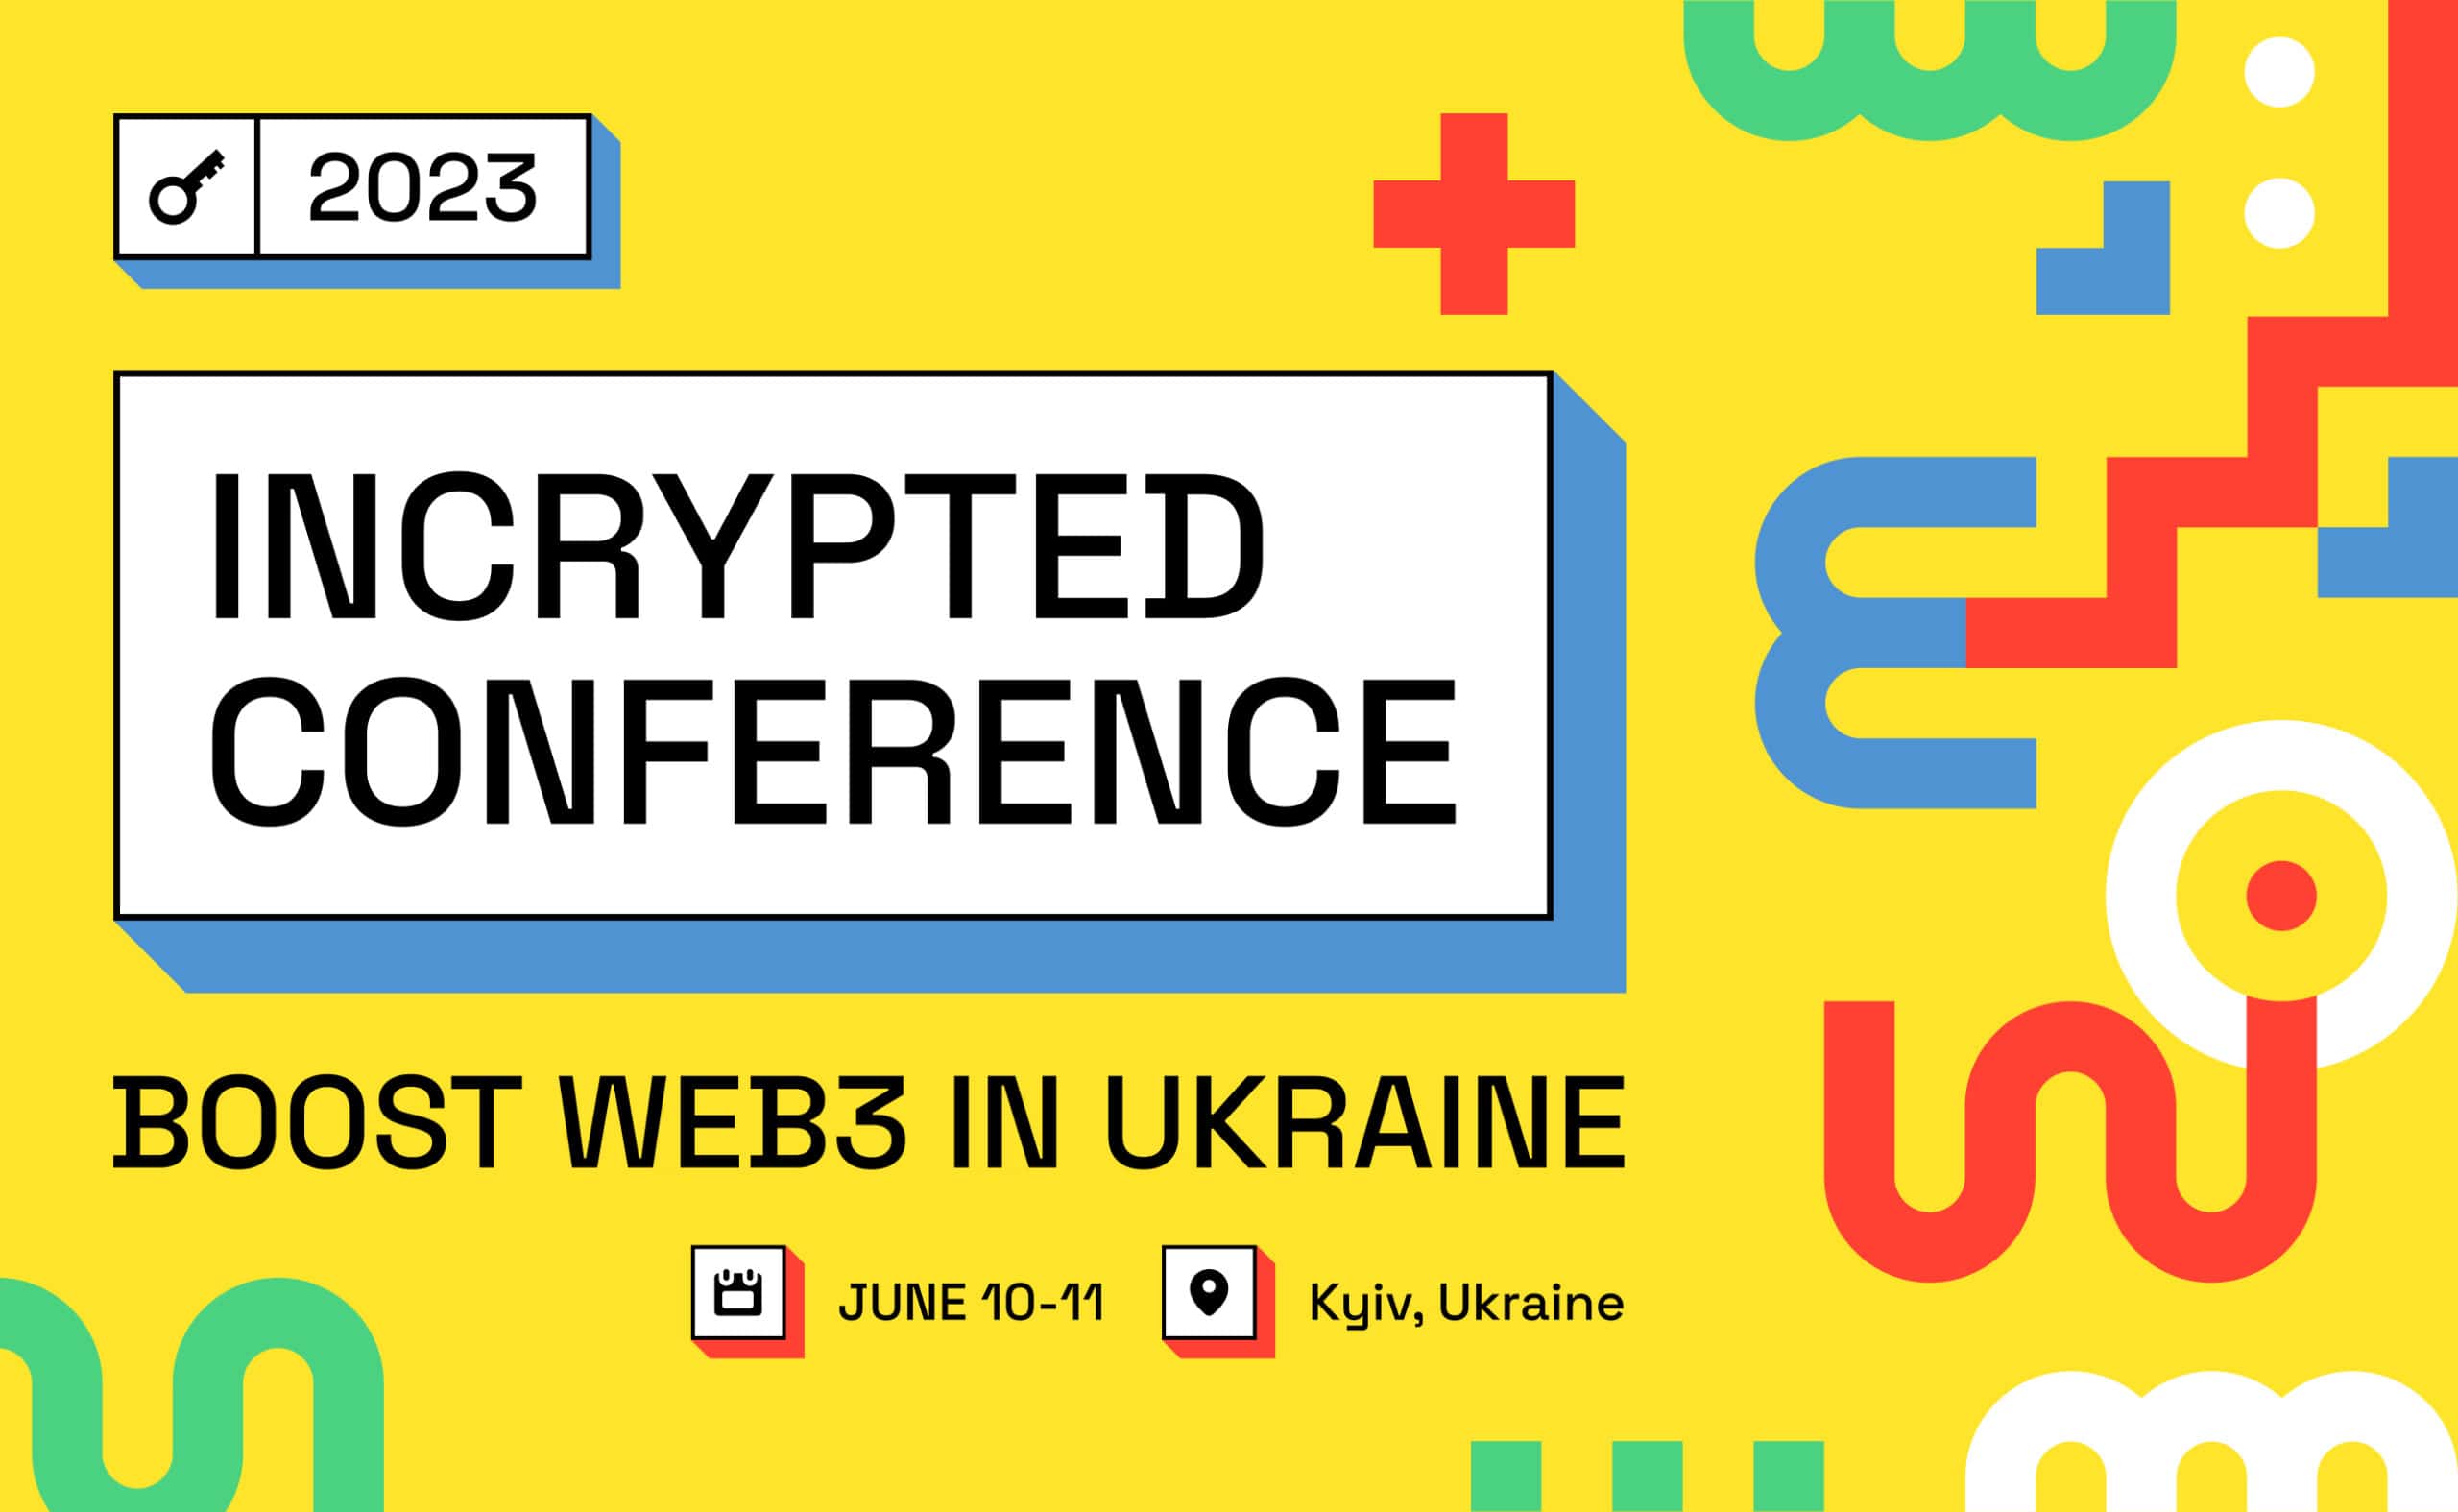 Konferencja Incrypted 2023 zgromadzi entuzjastów kryptowalut z całego świata w dniach 10-11 czerwca w Kijowie. Główny kolaż wiadomości.